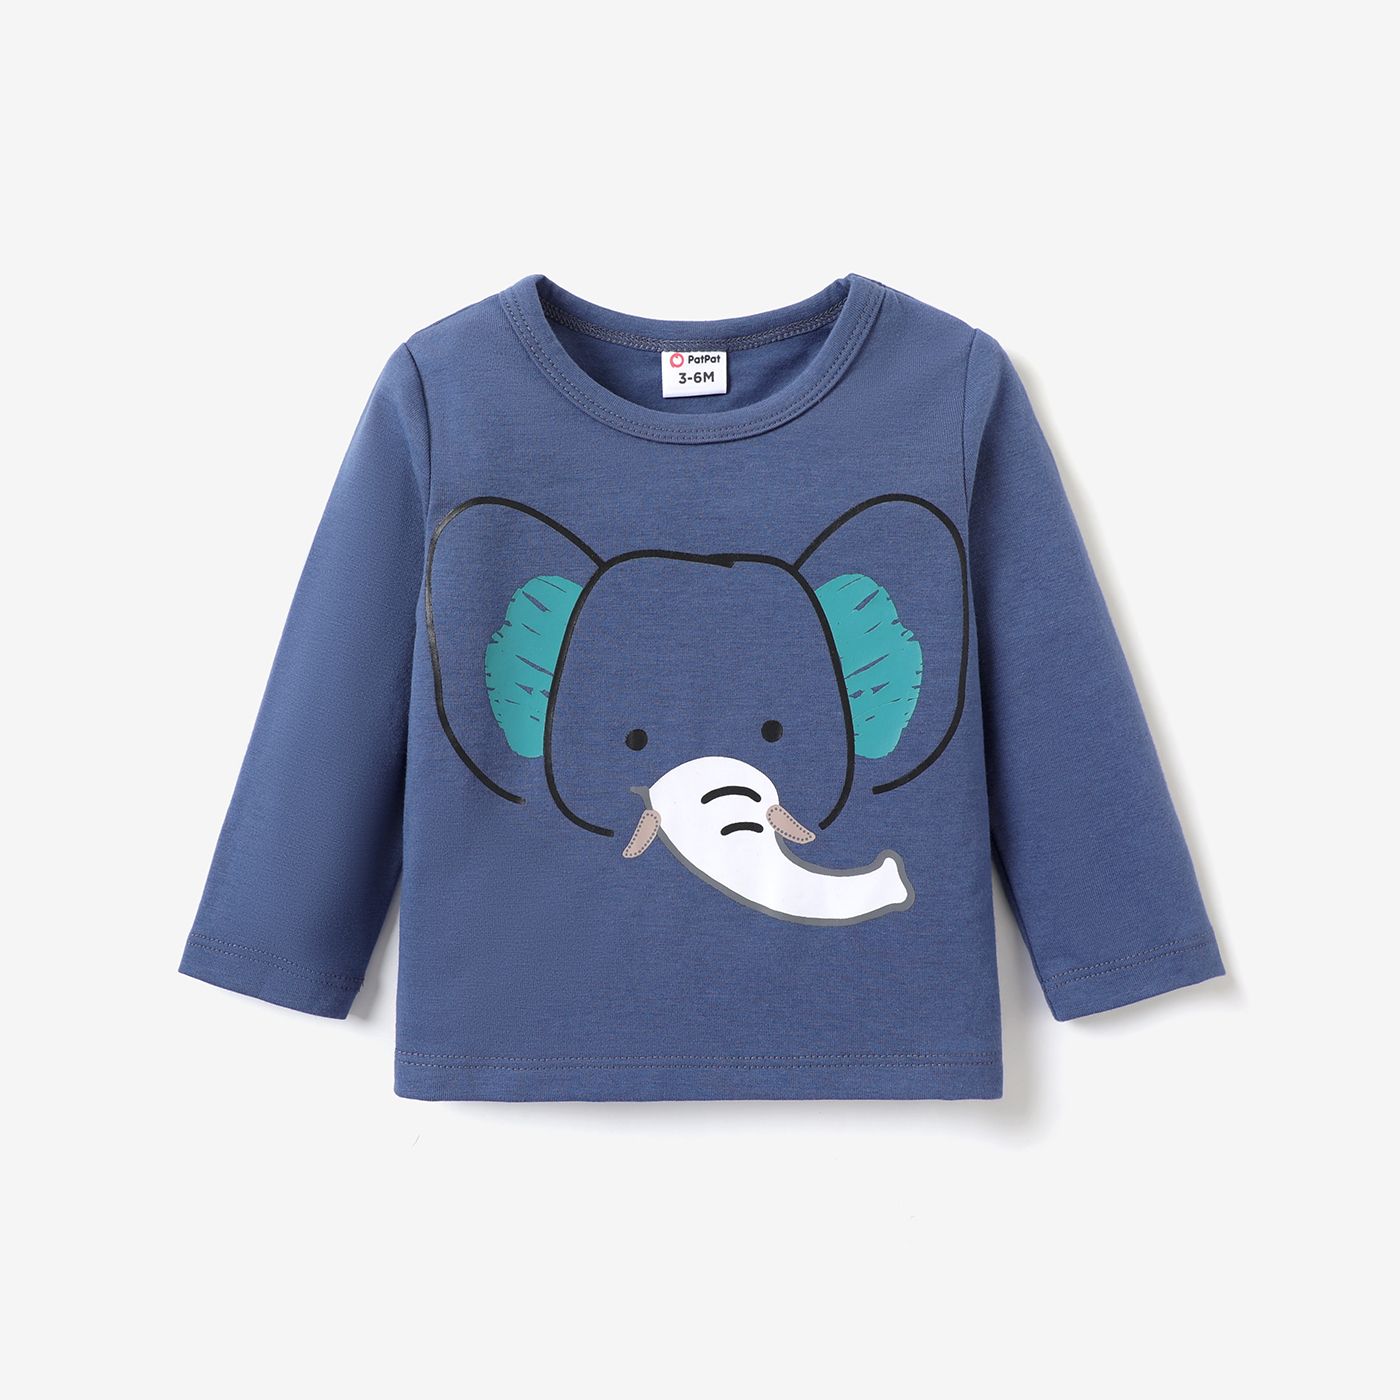 T-shirt Baby Boy Elephant Ou Lion Pattern